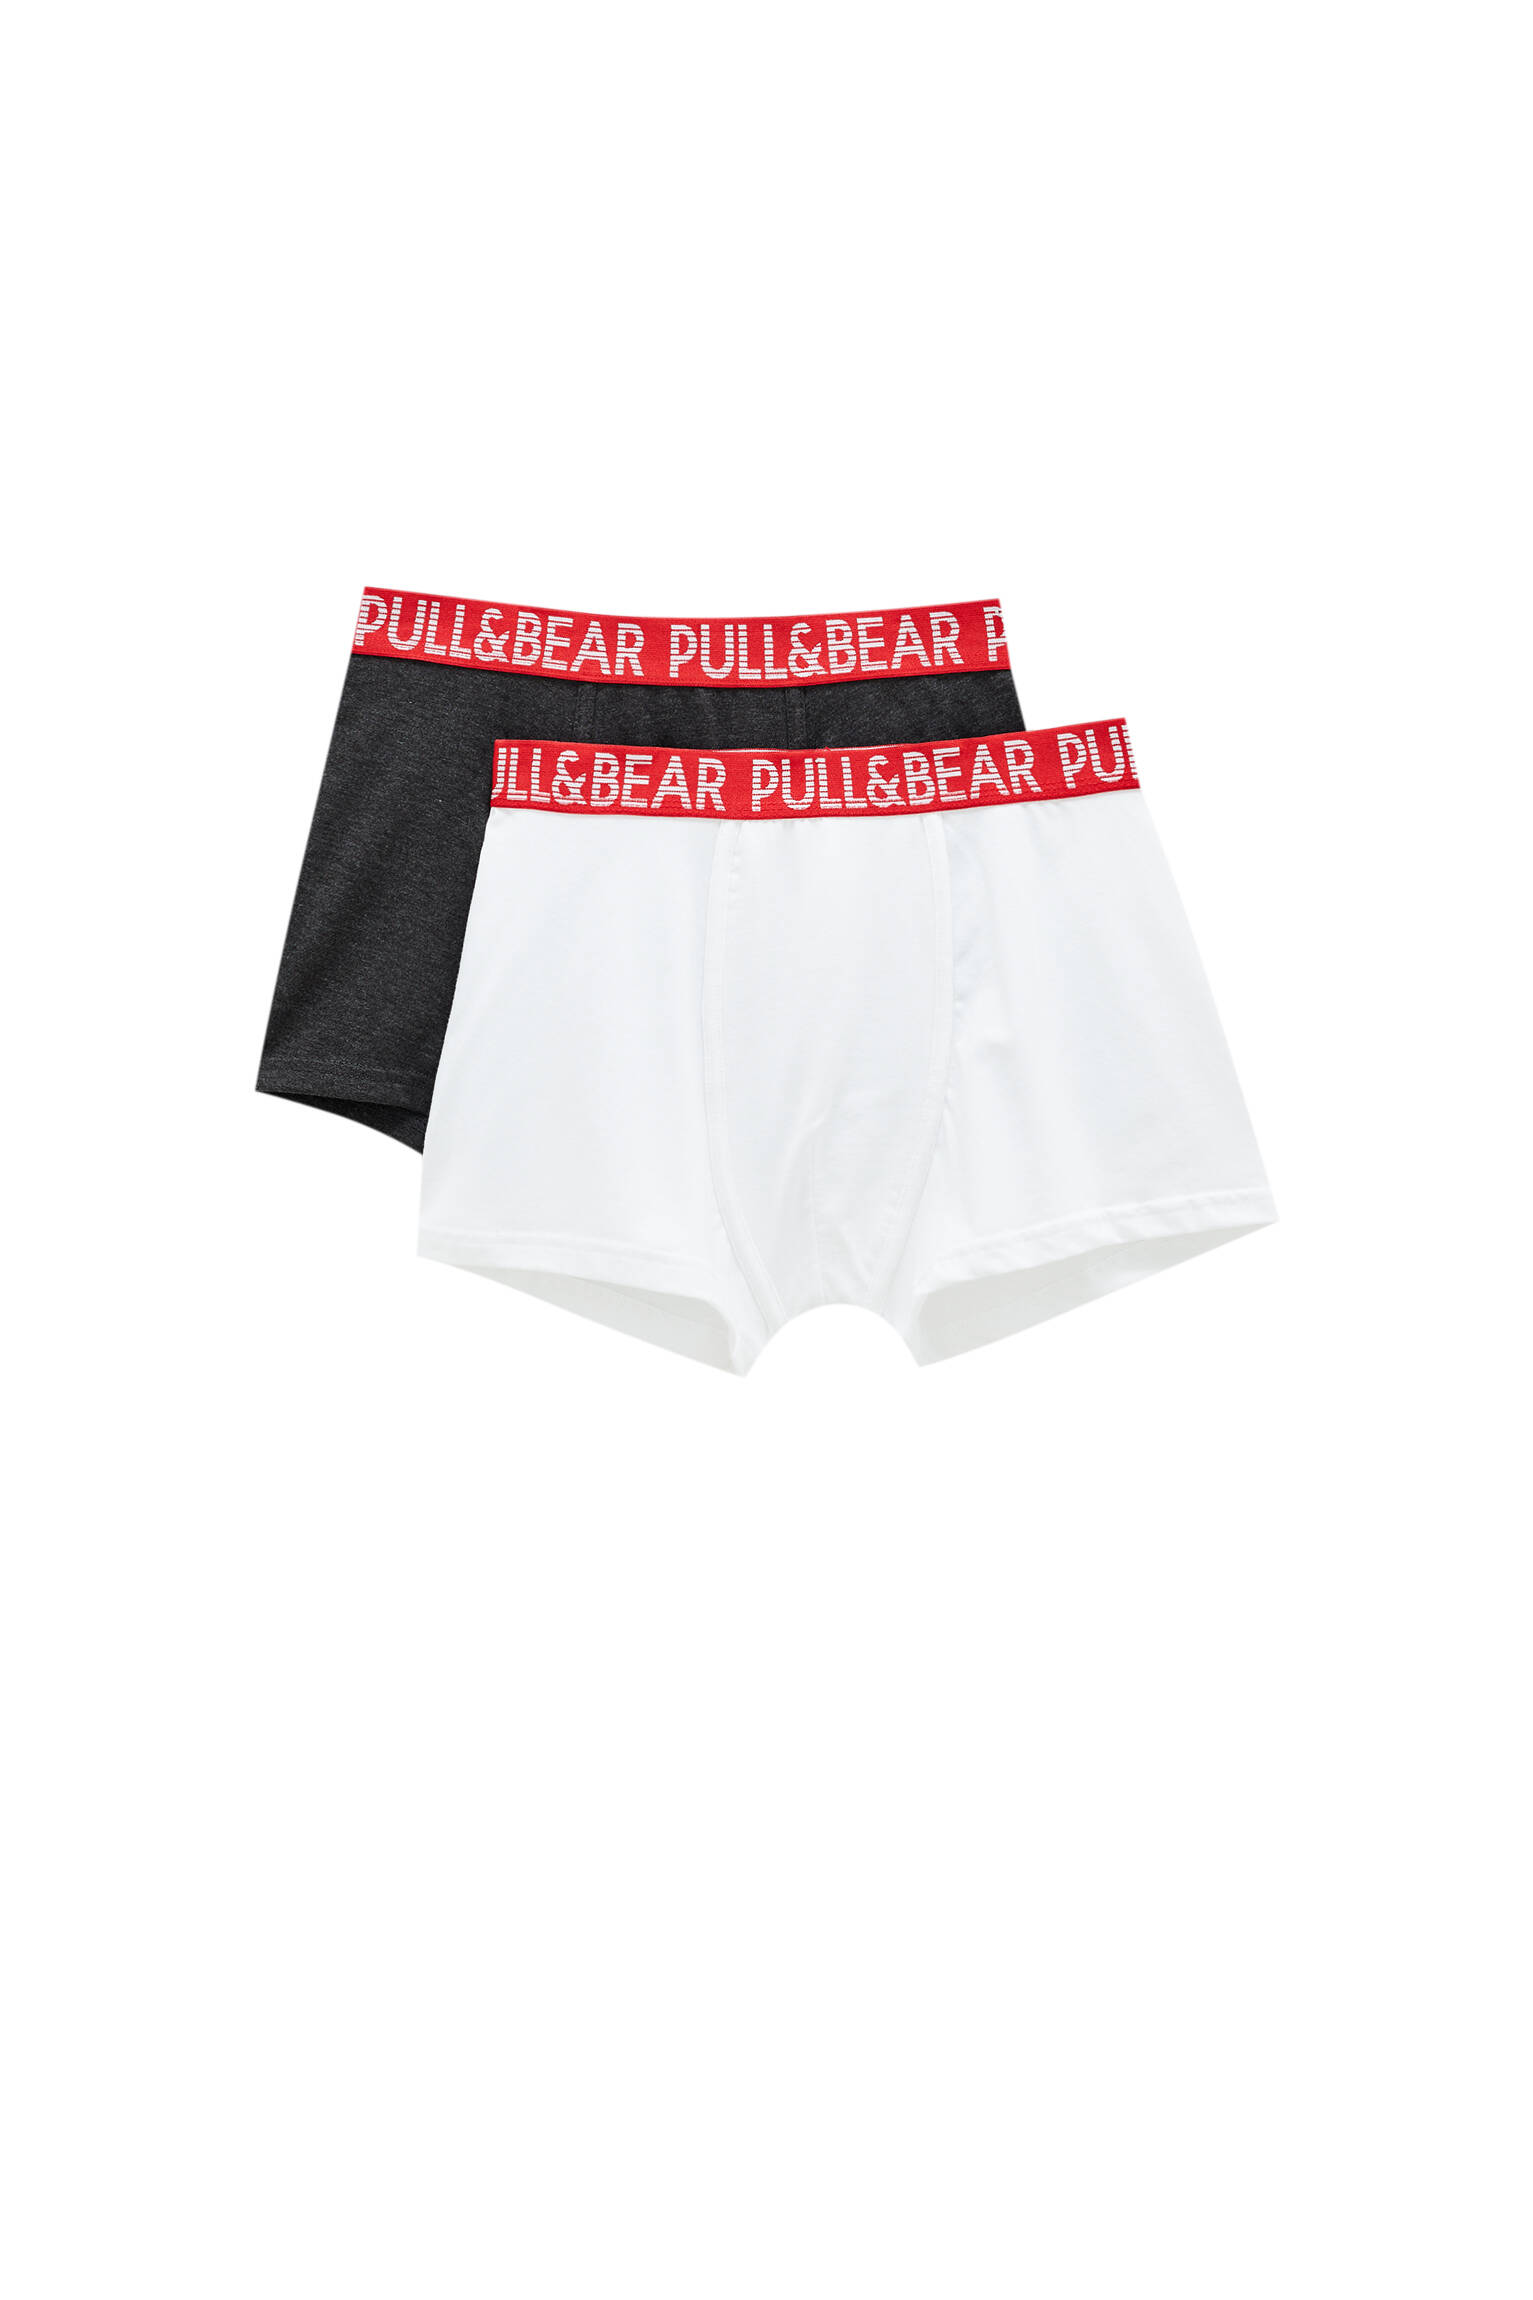 Pull&bear Homme Lot De Deux Boxers En Plusieurs Couleurs à Taille élastique Rouge Et Logo Contrastan